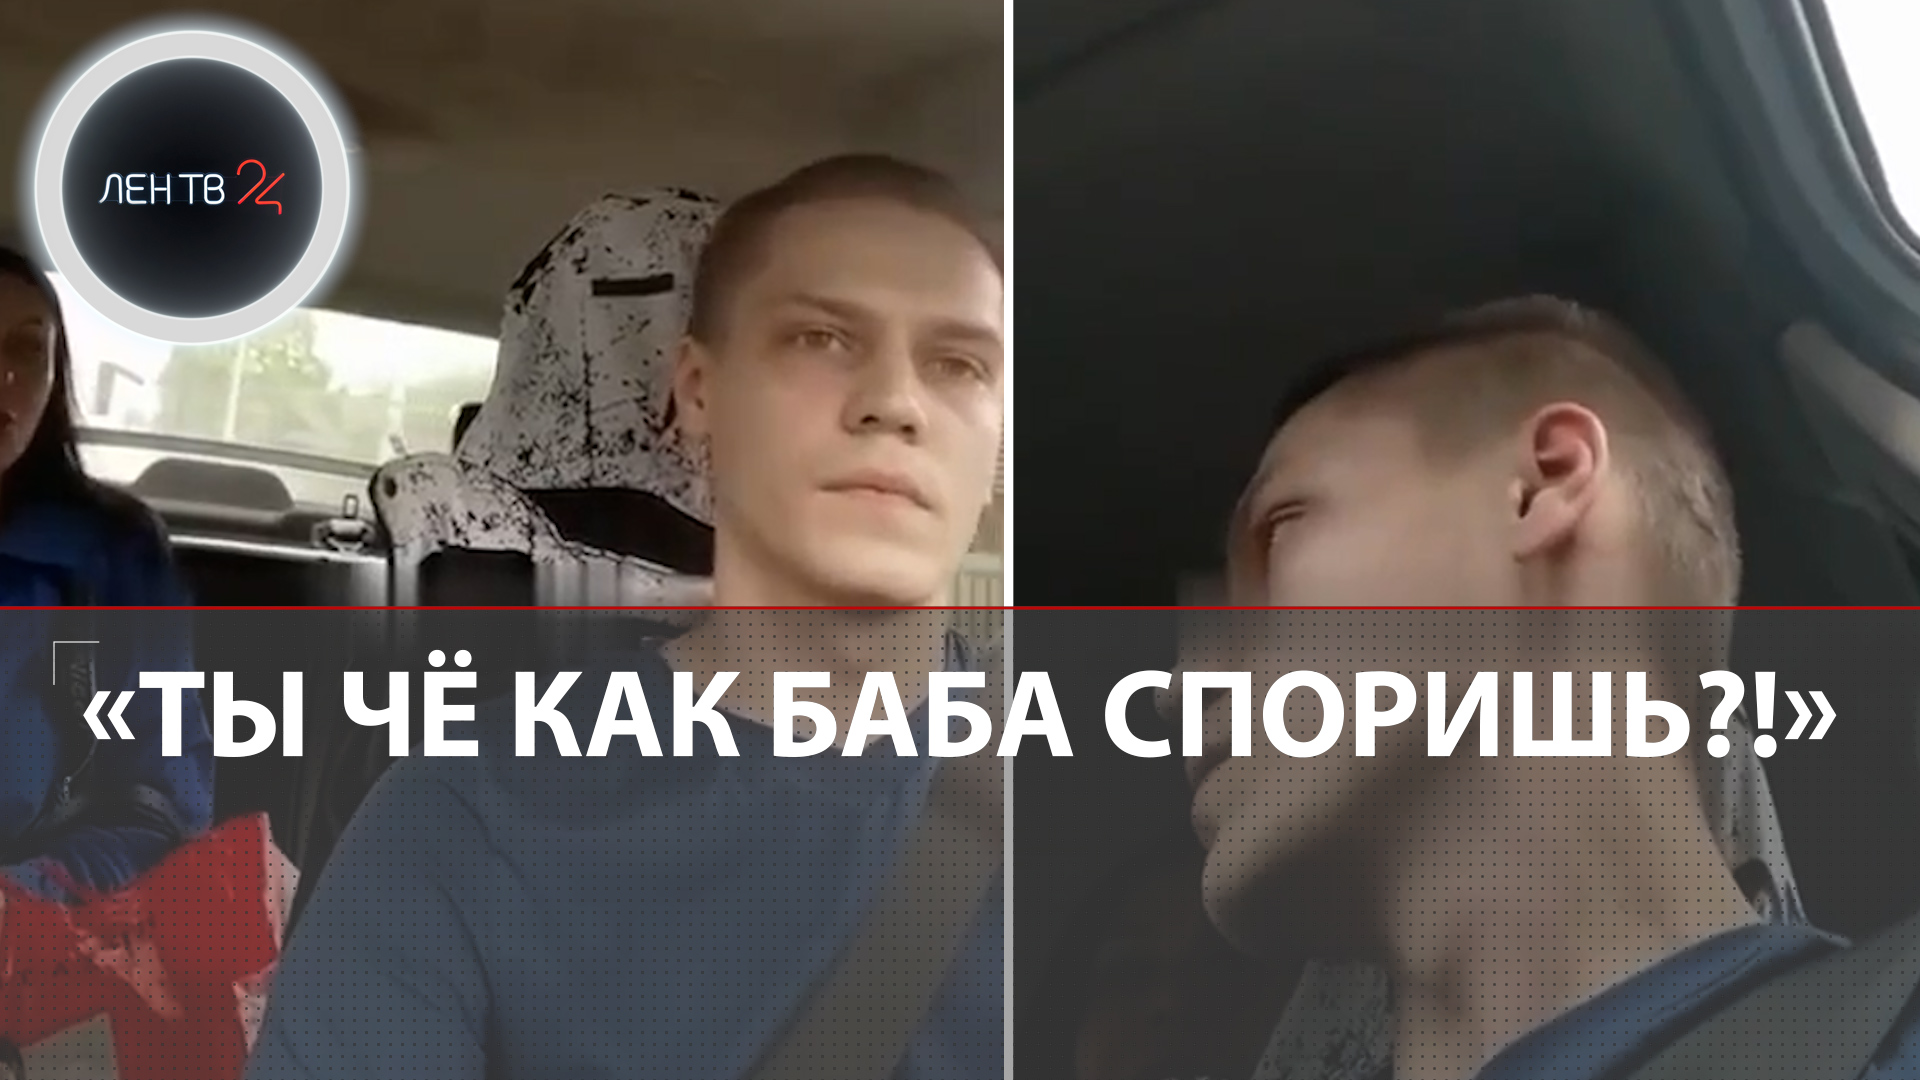 Нападение на таксиста в Обнинске | Психолог с больным зубом закосплеила «Вези меня, мразь!»